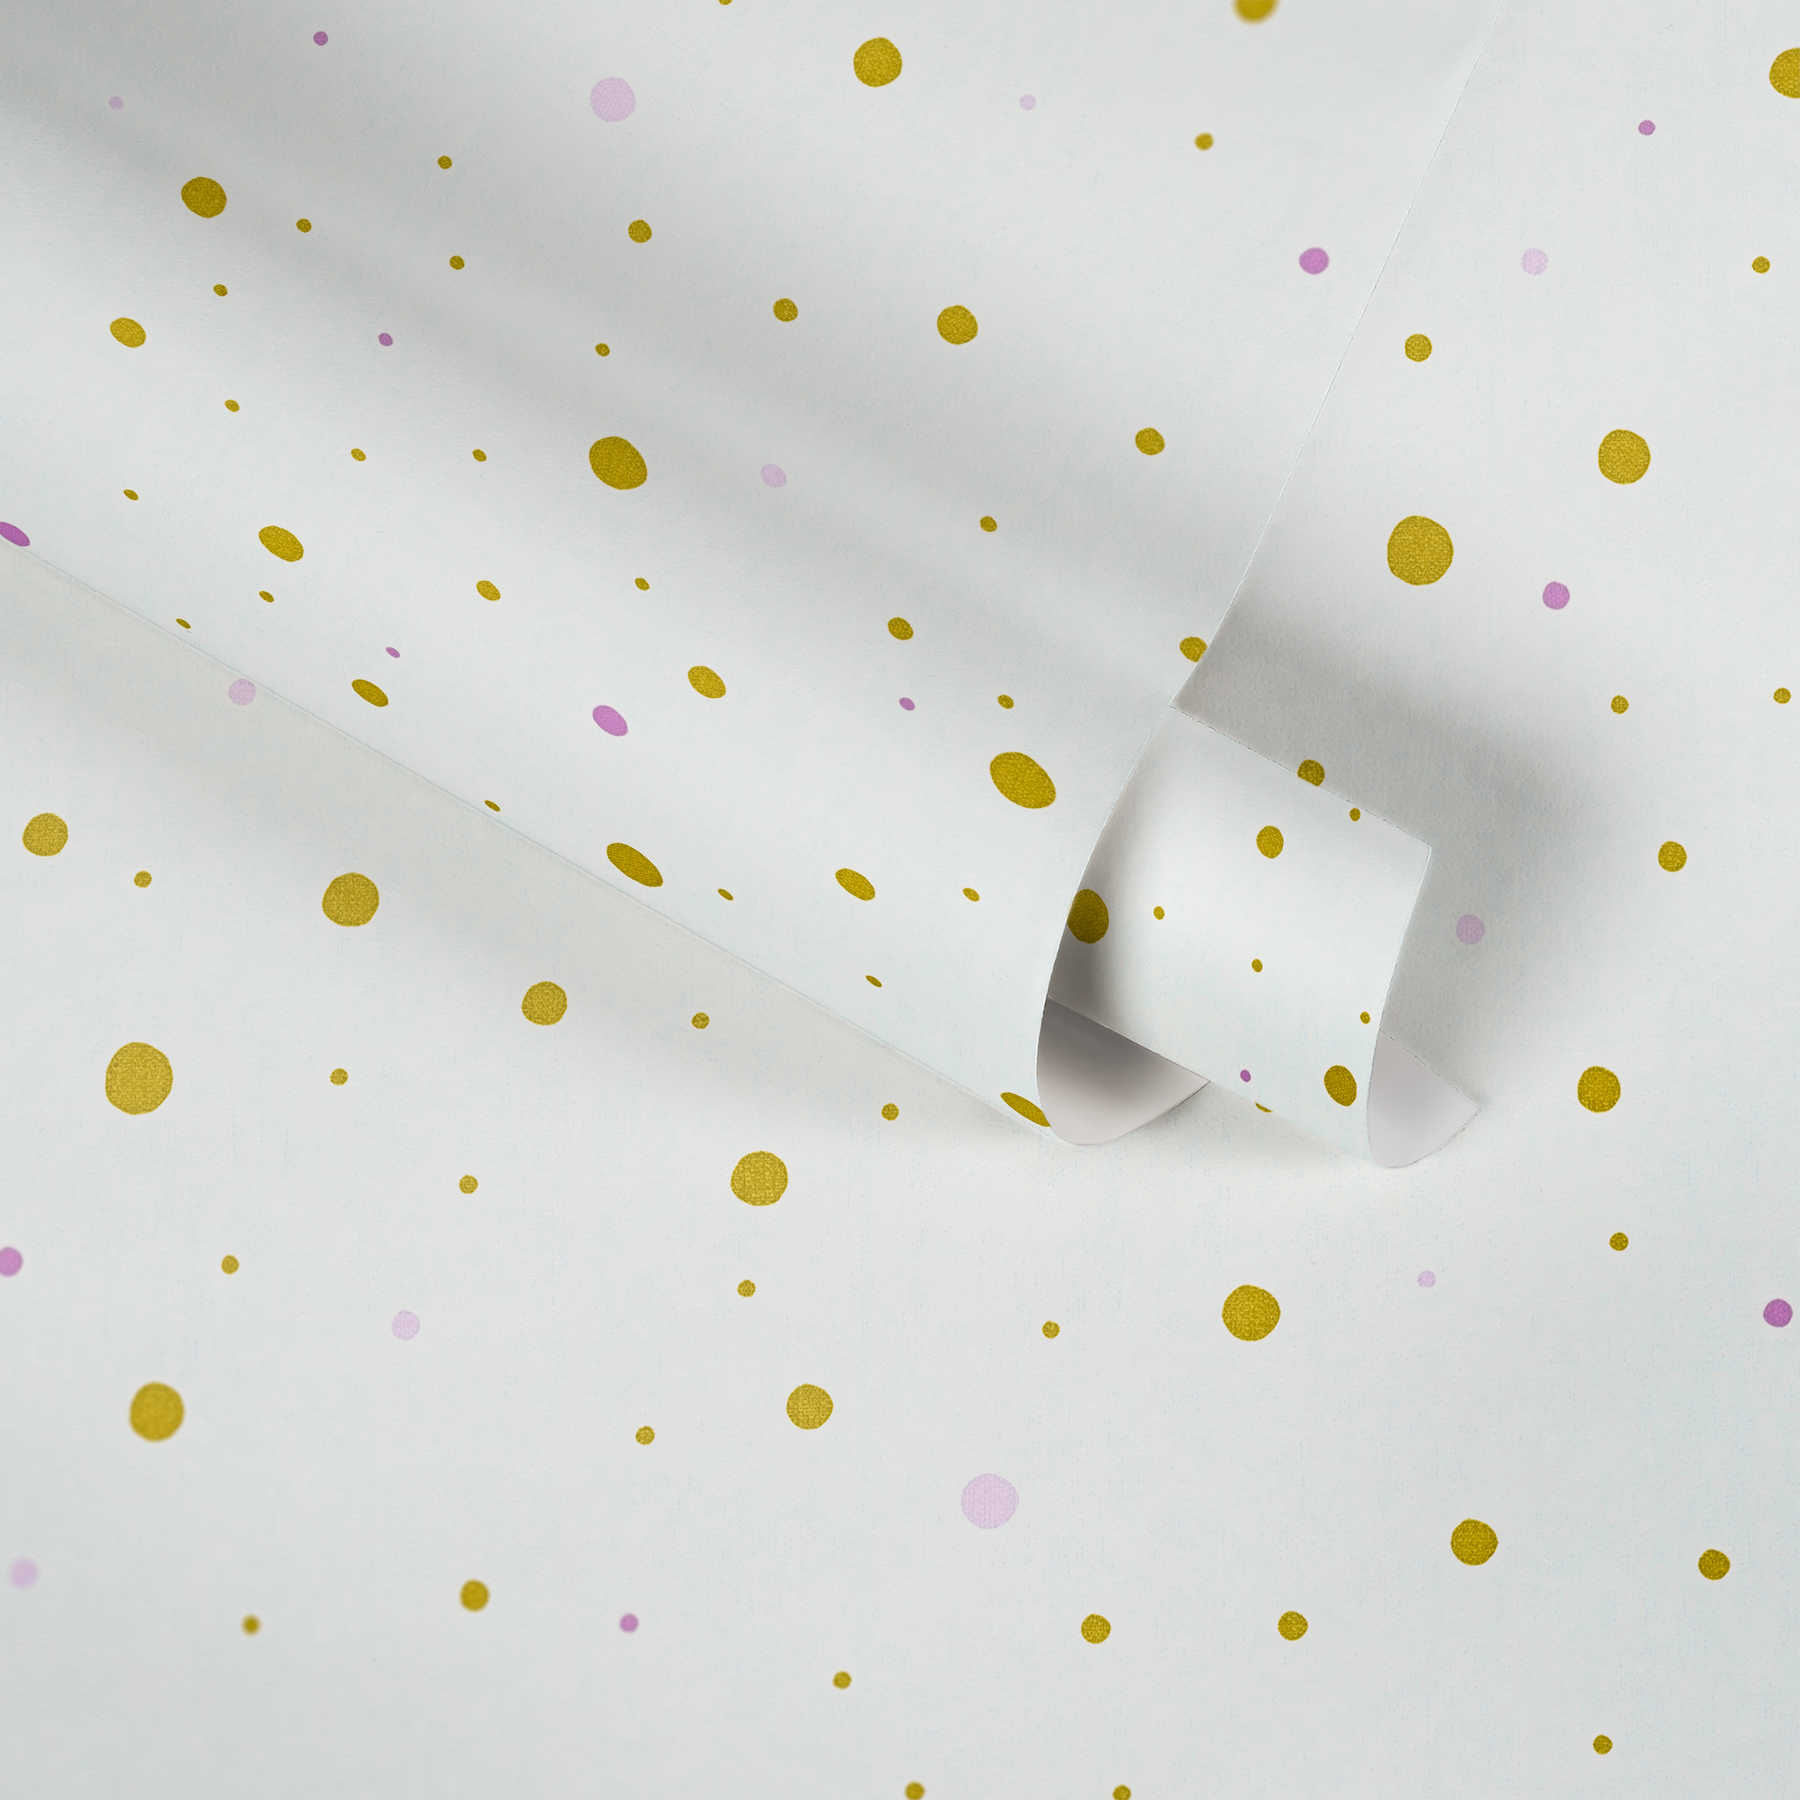             Papel pintado de puntos y efecto metálico para habitación infantil - blanco
        